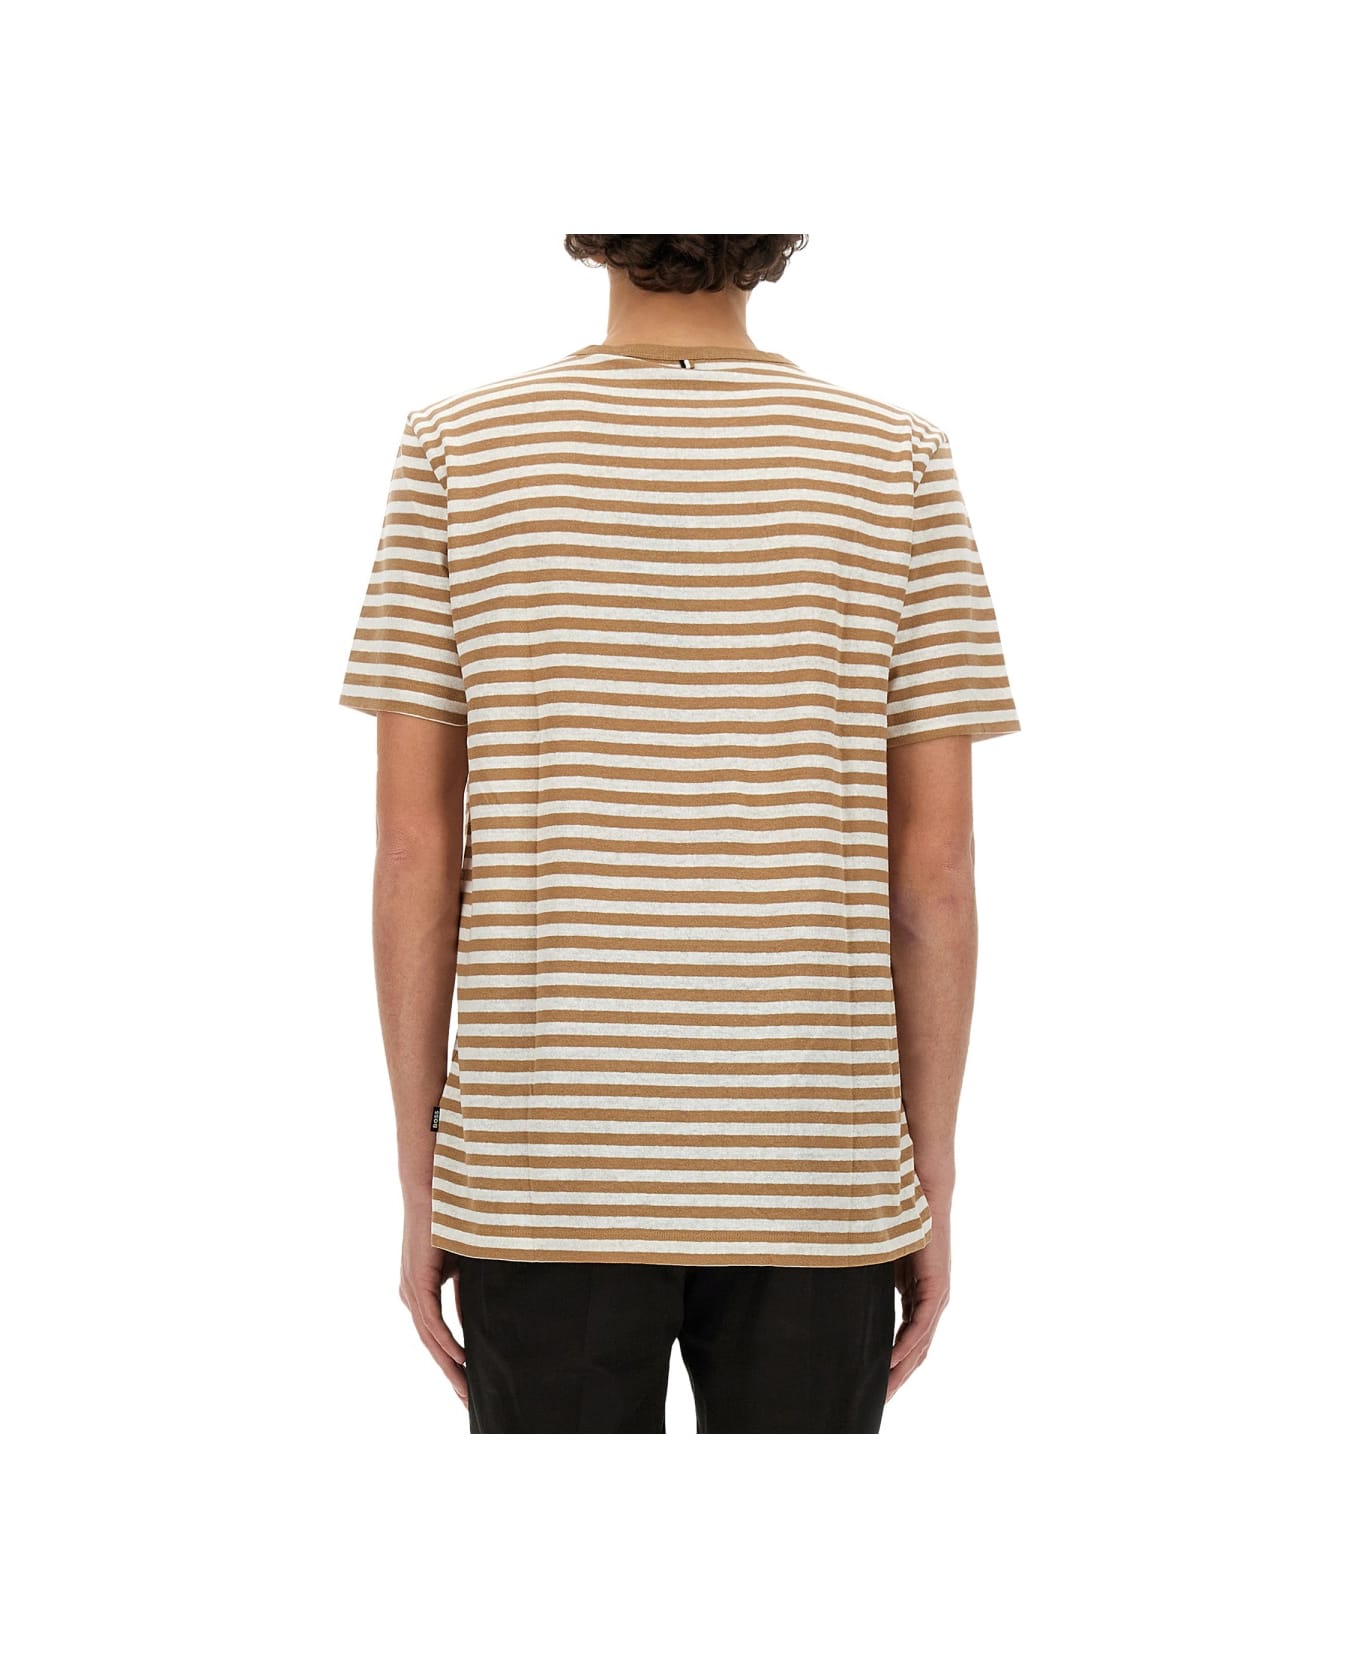 Hugo Boss Striped T-shirt - BEIGE